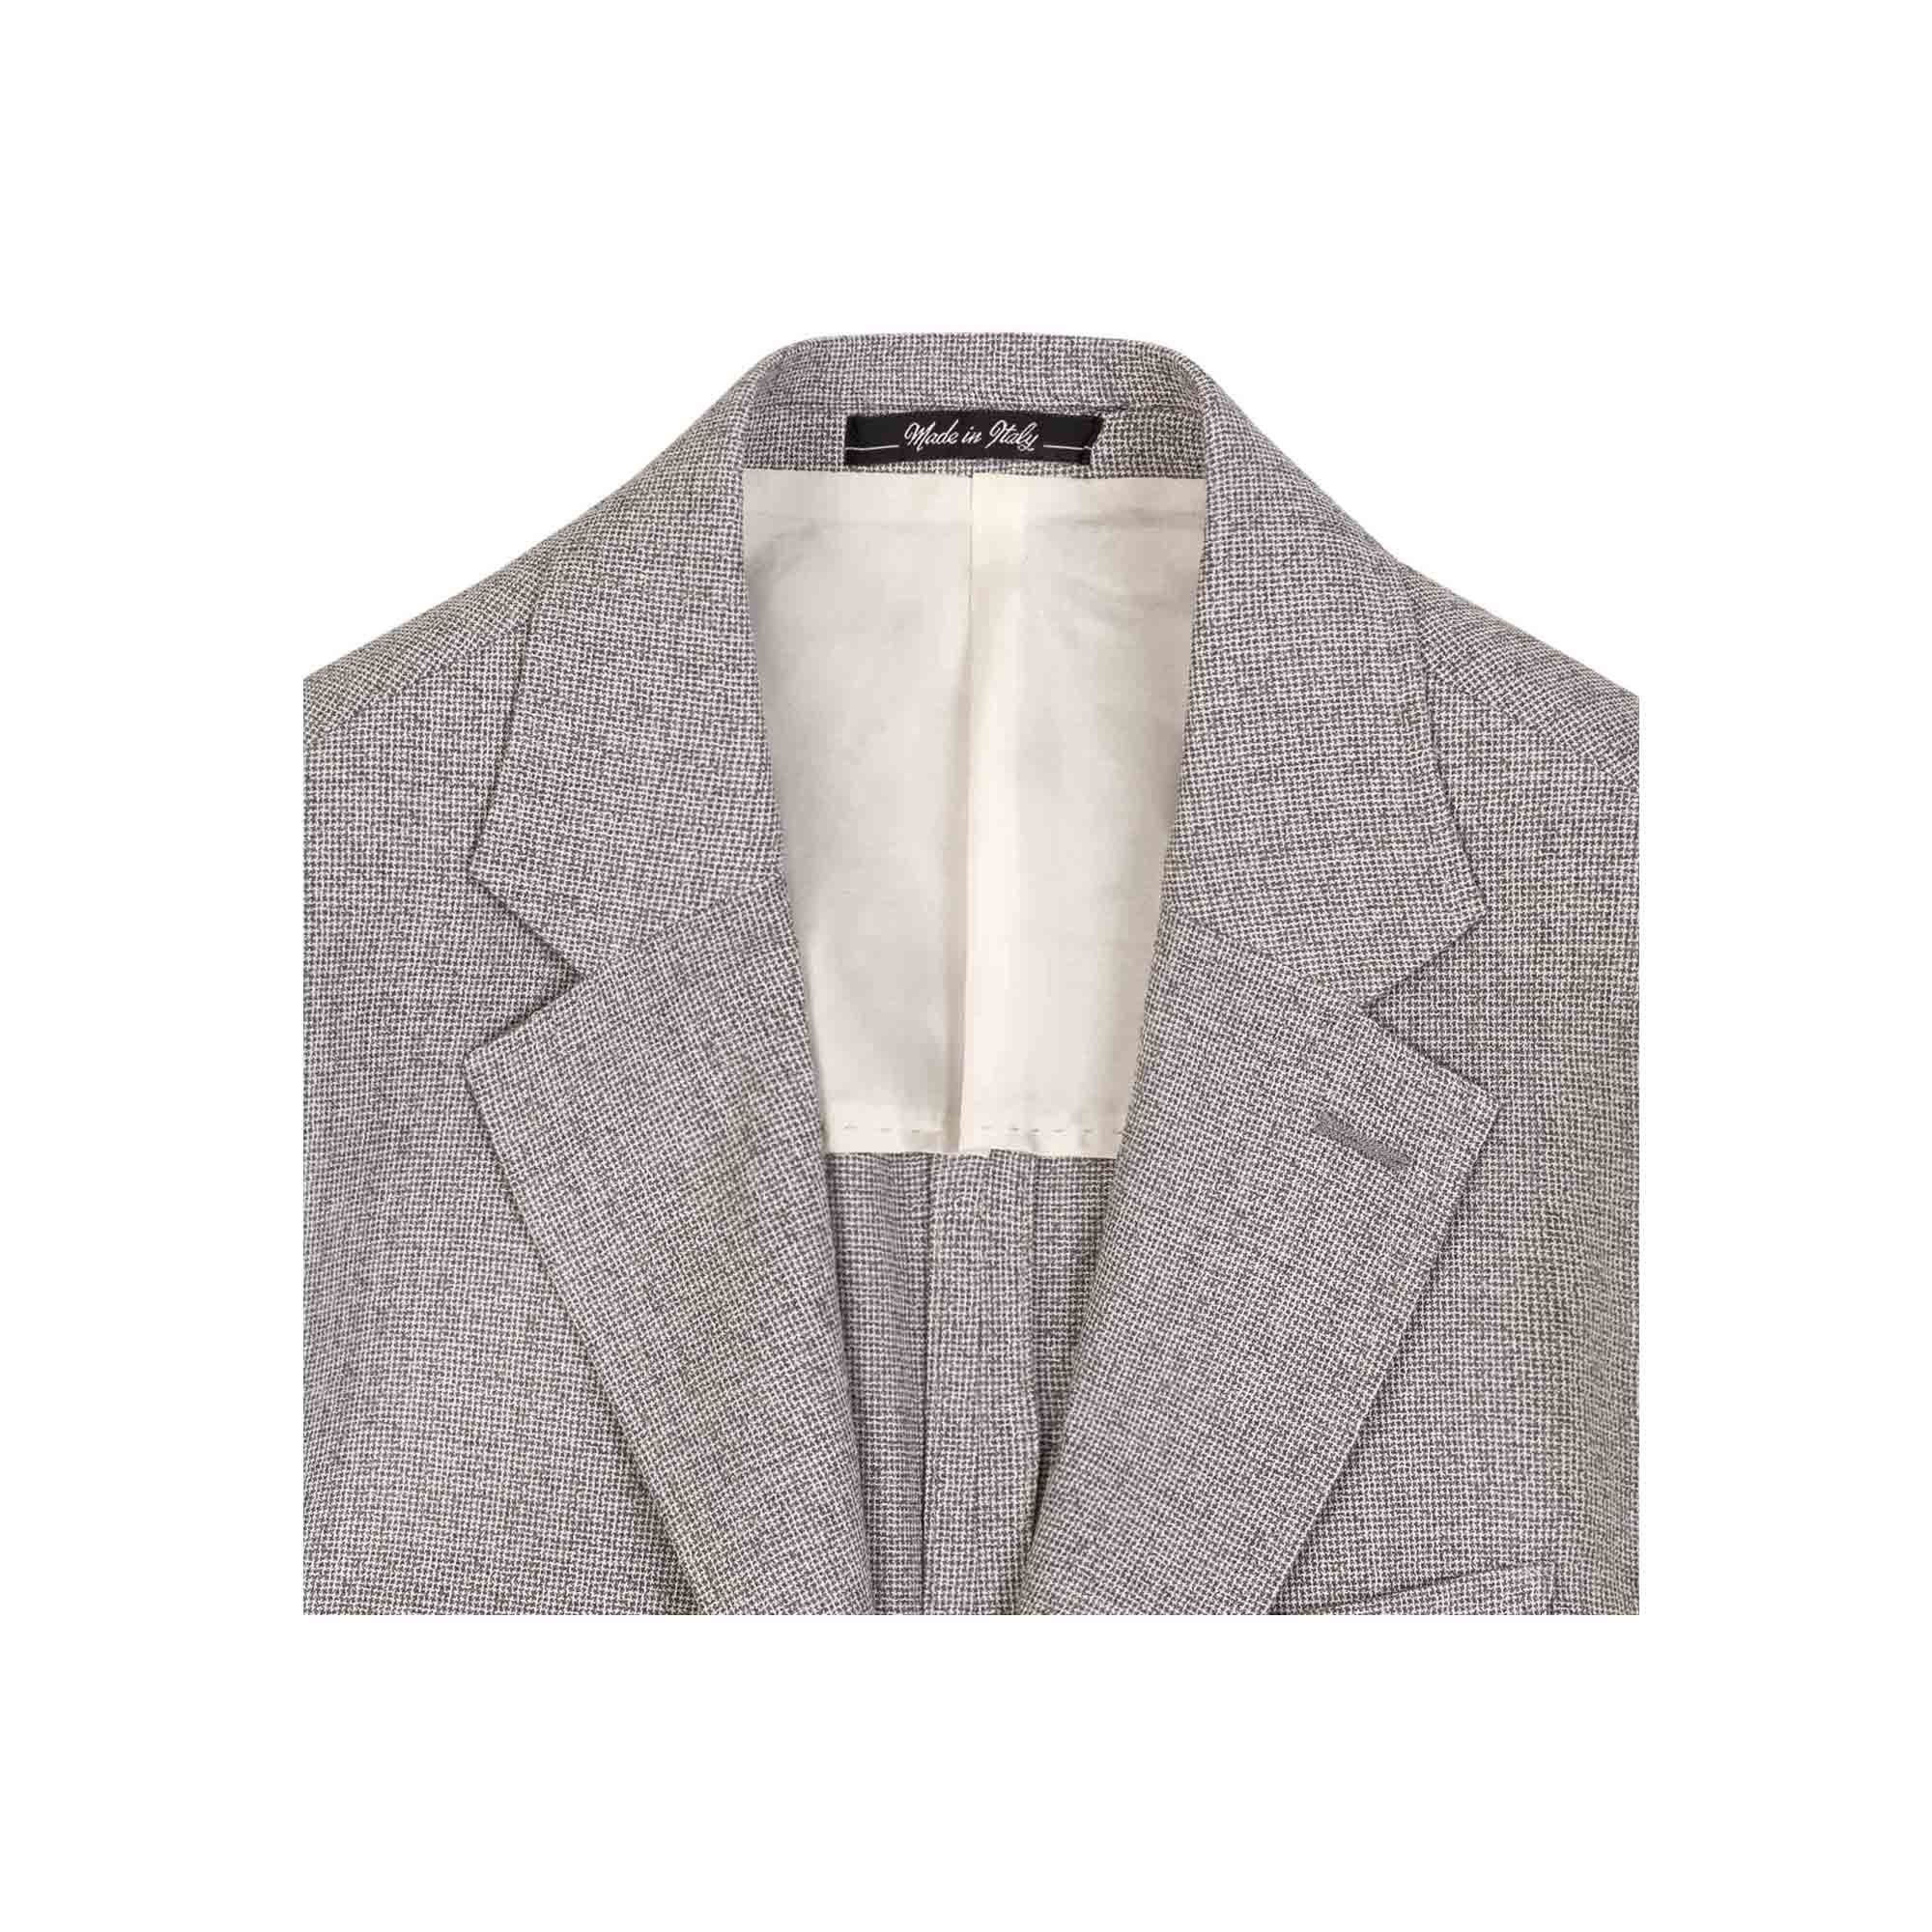 Men's Seersucker Suit in Gray